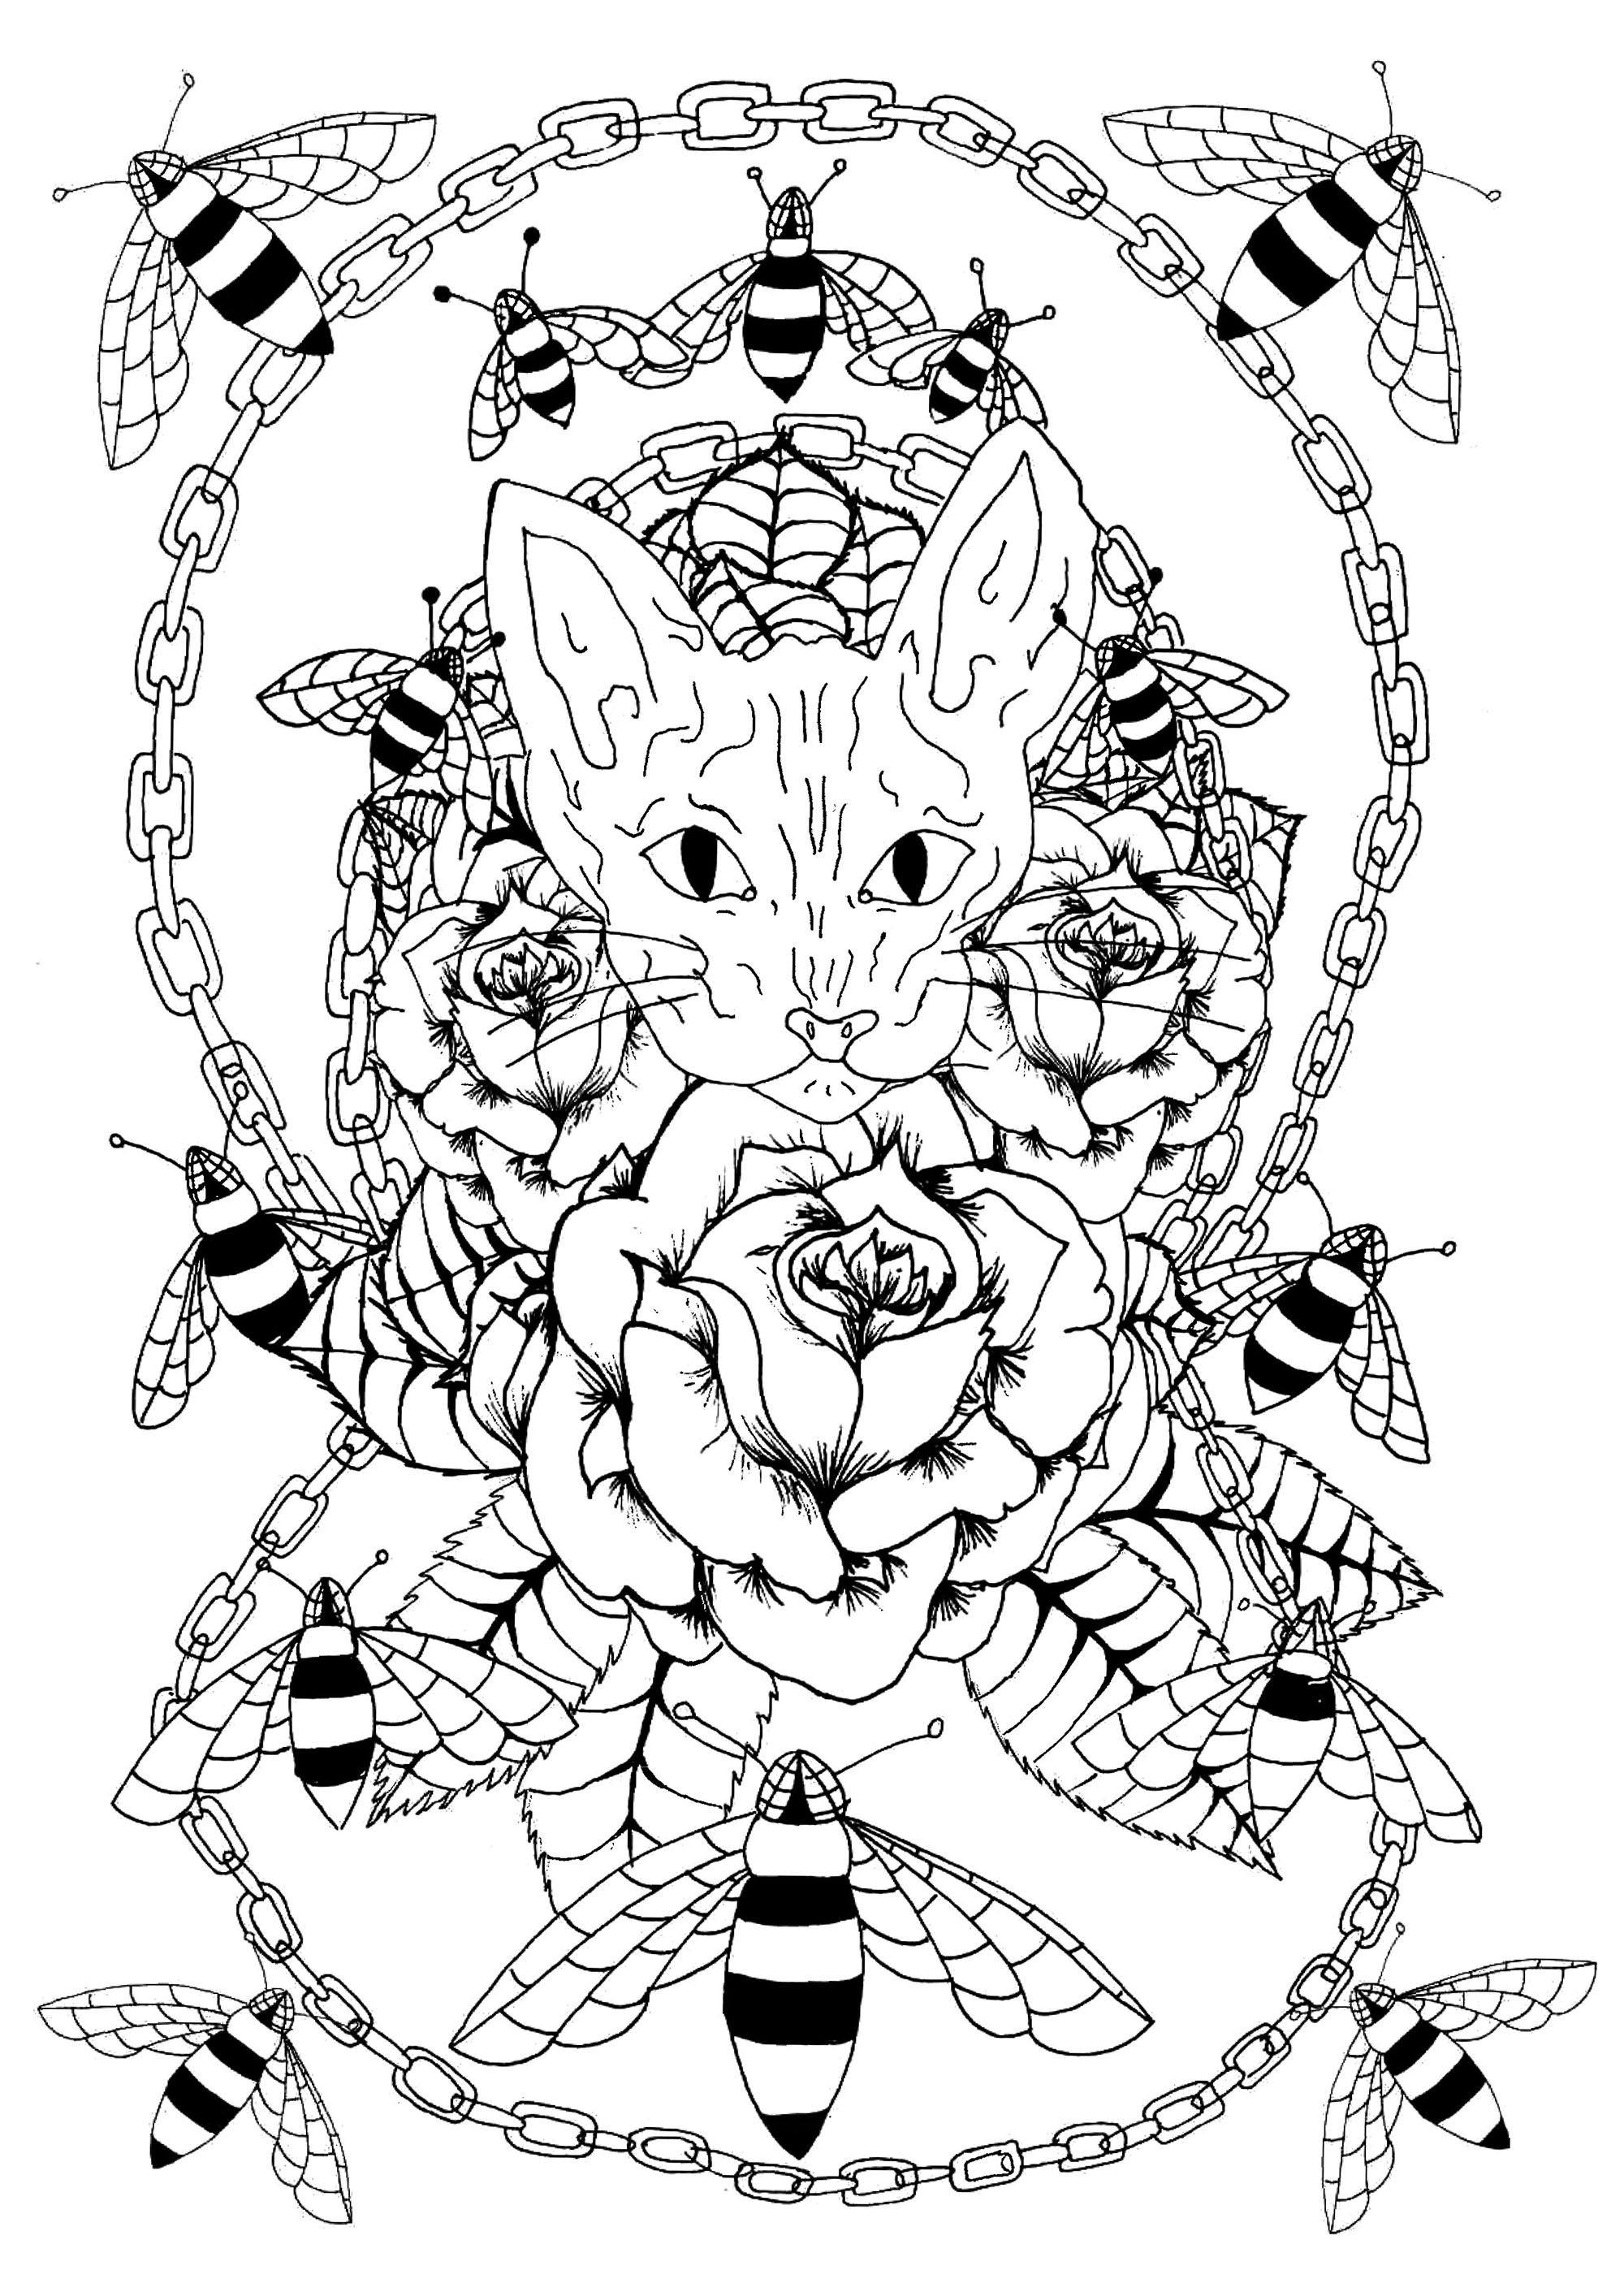 Tête de chat sphynx entourée de roses, d'abeilles et d'une chaîne métallique